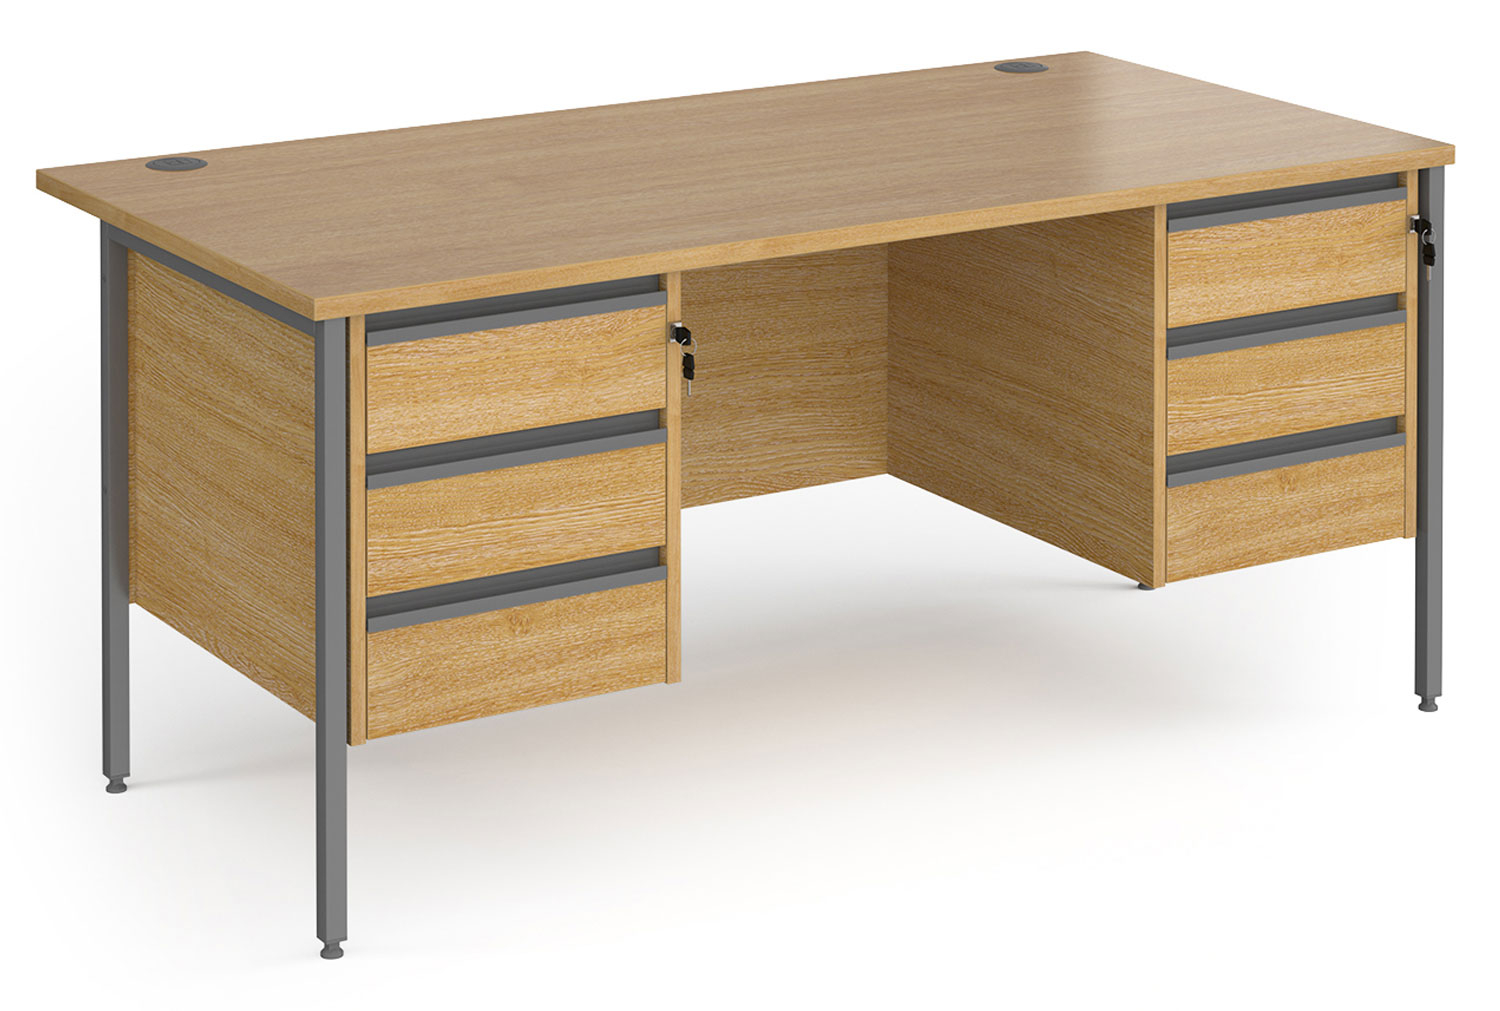 Value Line Classic+ Rectangular H-Leg Office Desk 3+3 Drawers (Graphite Leg), 160wx80dx73h (cm), Oak, Fully Installed